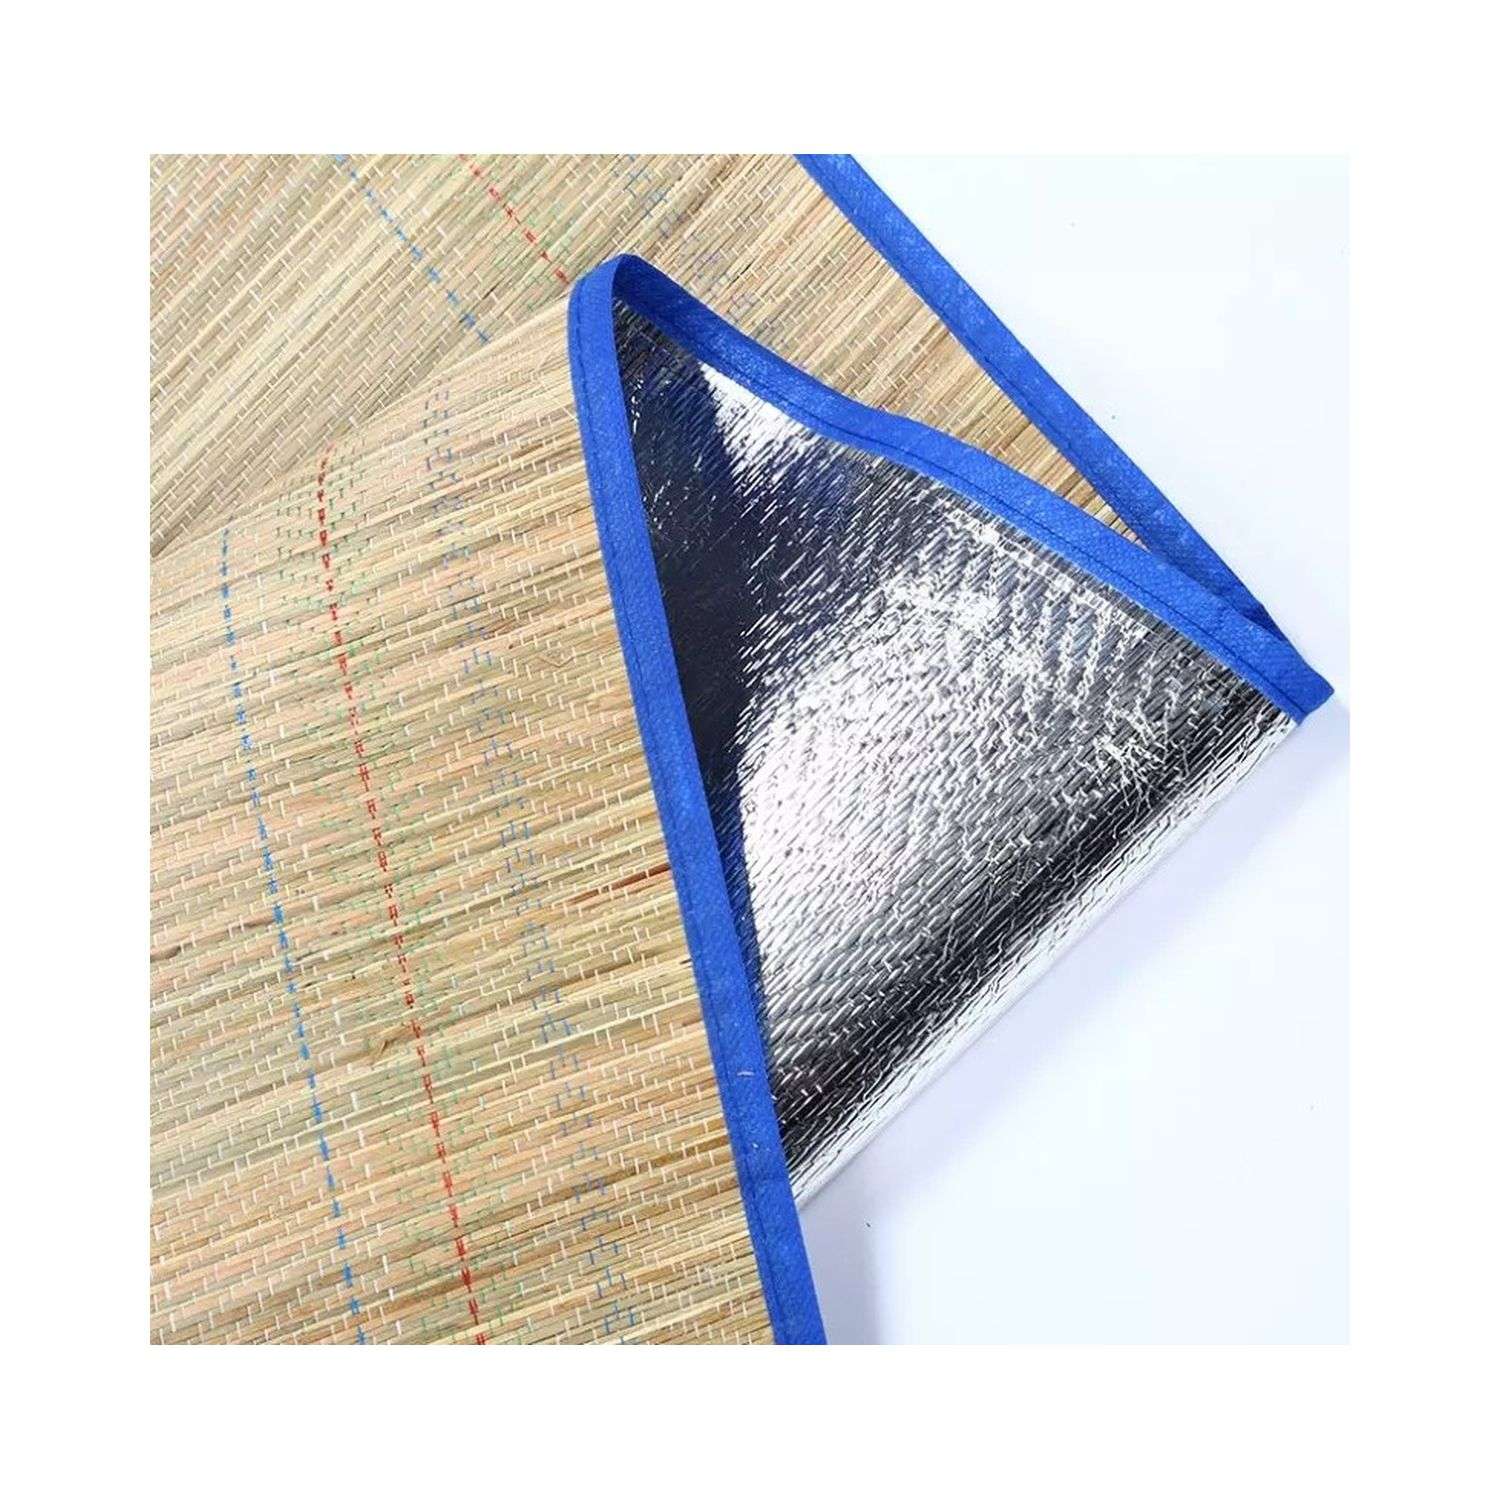 Фольгированный пляжный коврик Rabizy из бамбука 170х90 см голубые цветы - фото 3